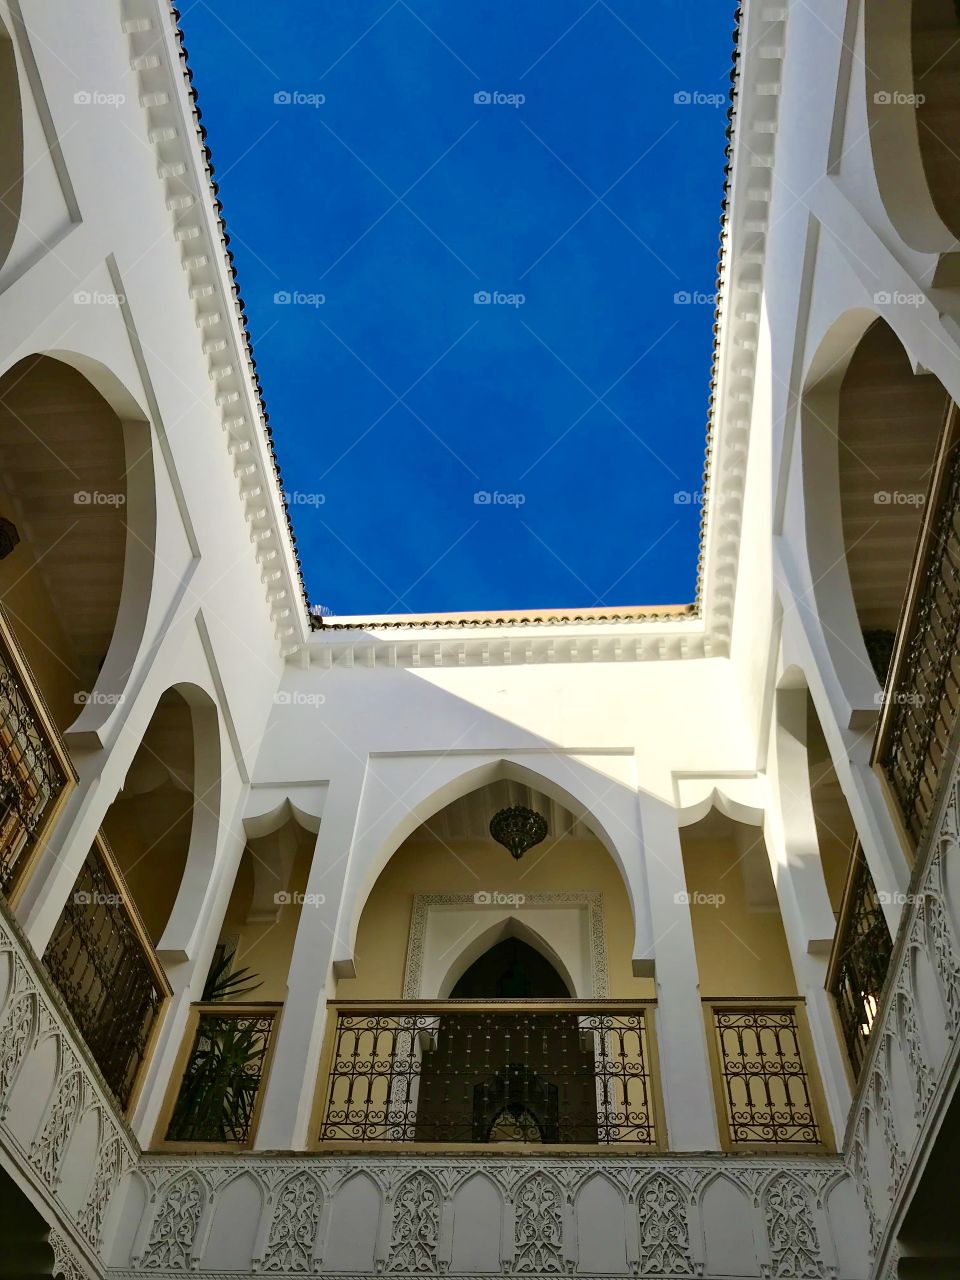 Maroccan architecture 